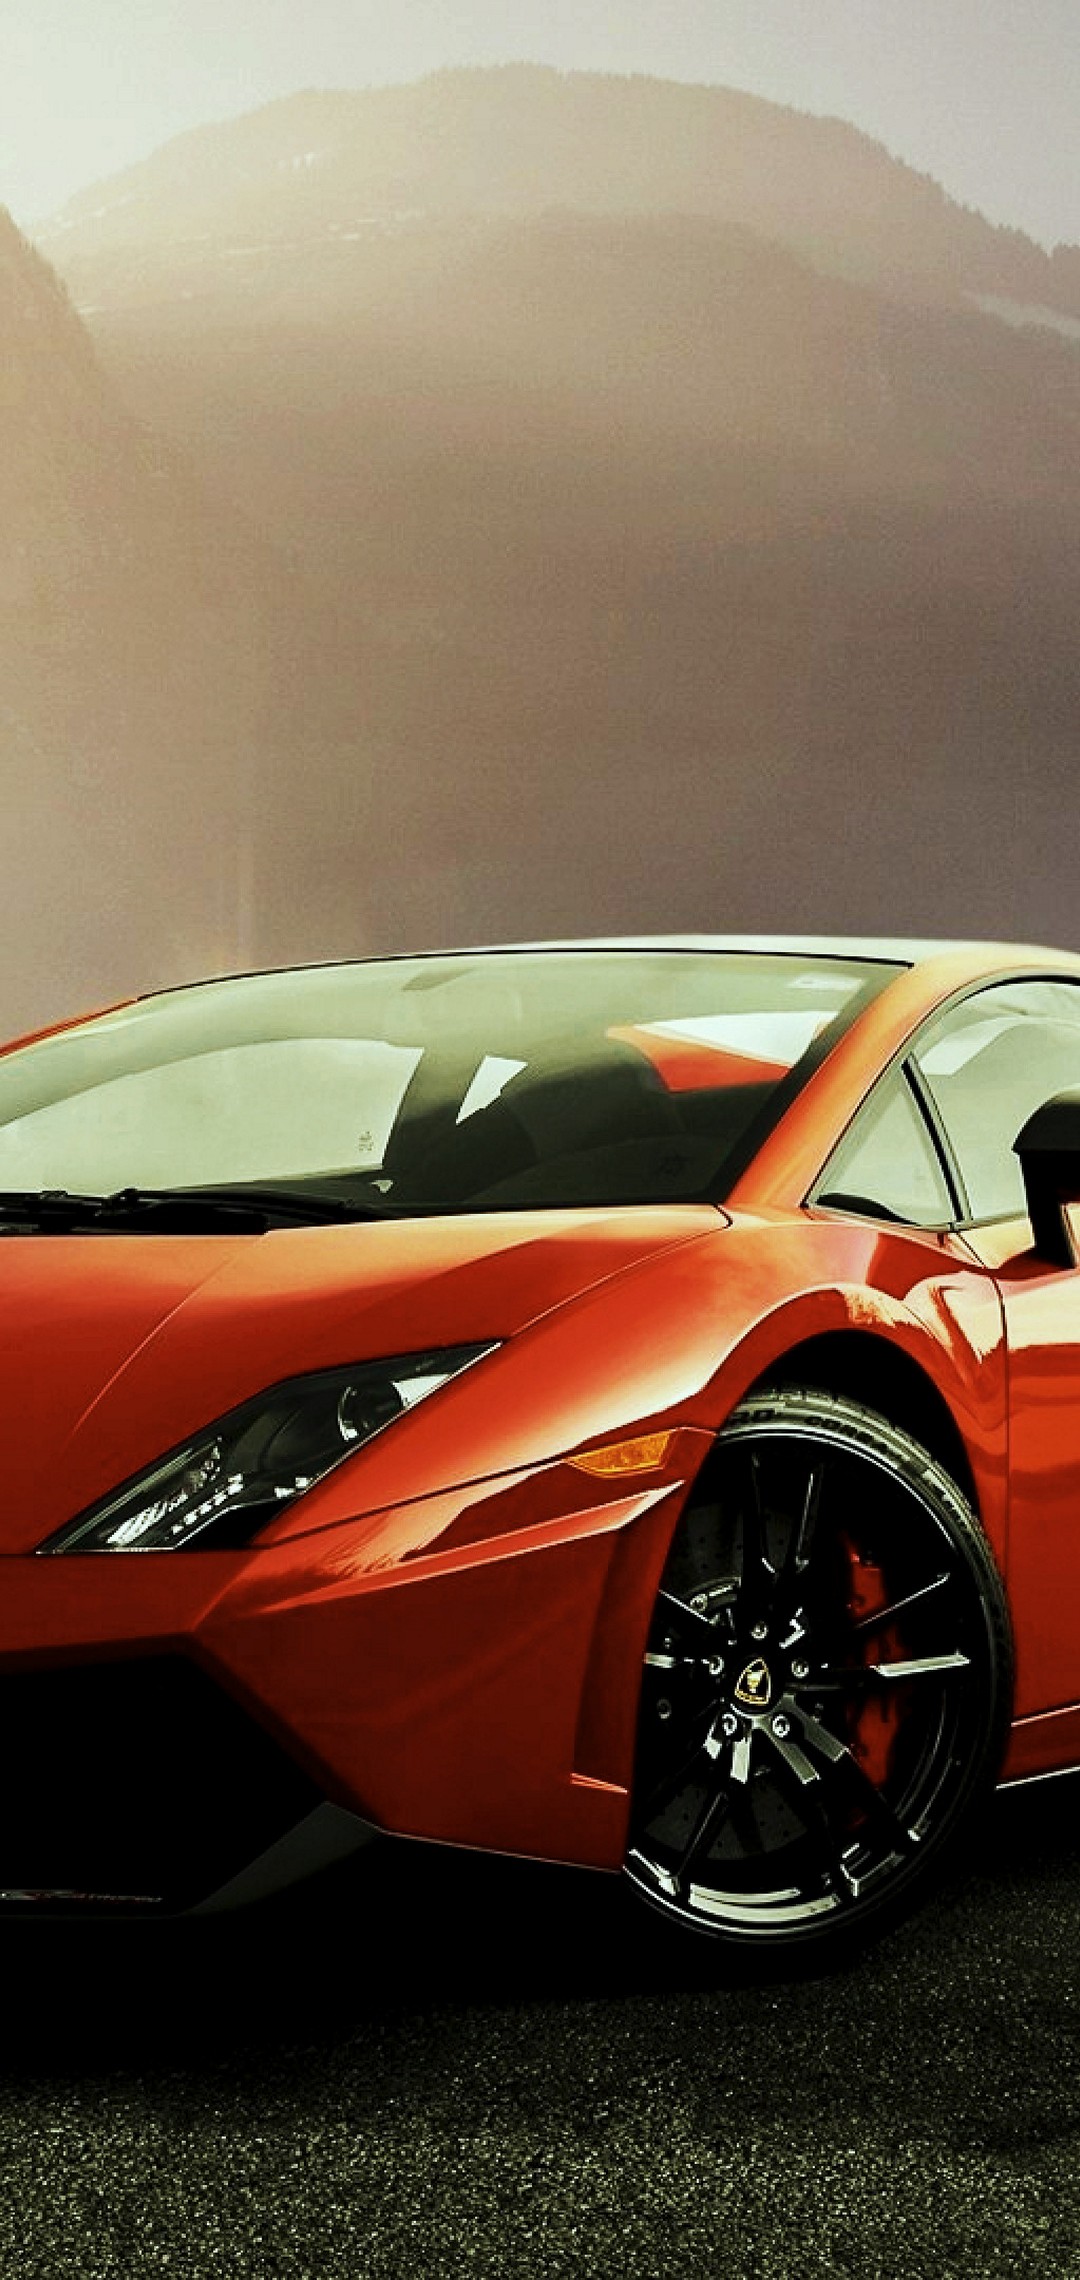 4K Lamborghini Amoled Wallpaper Download